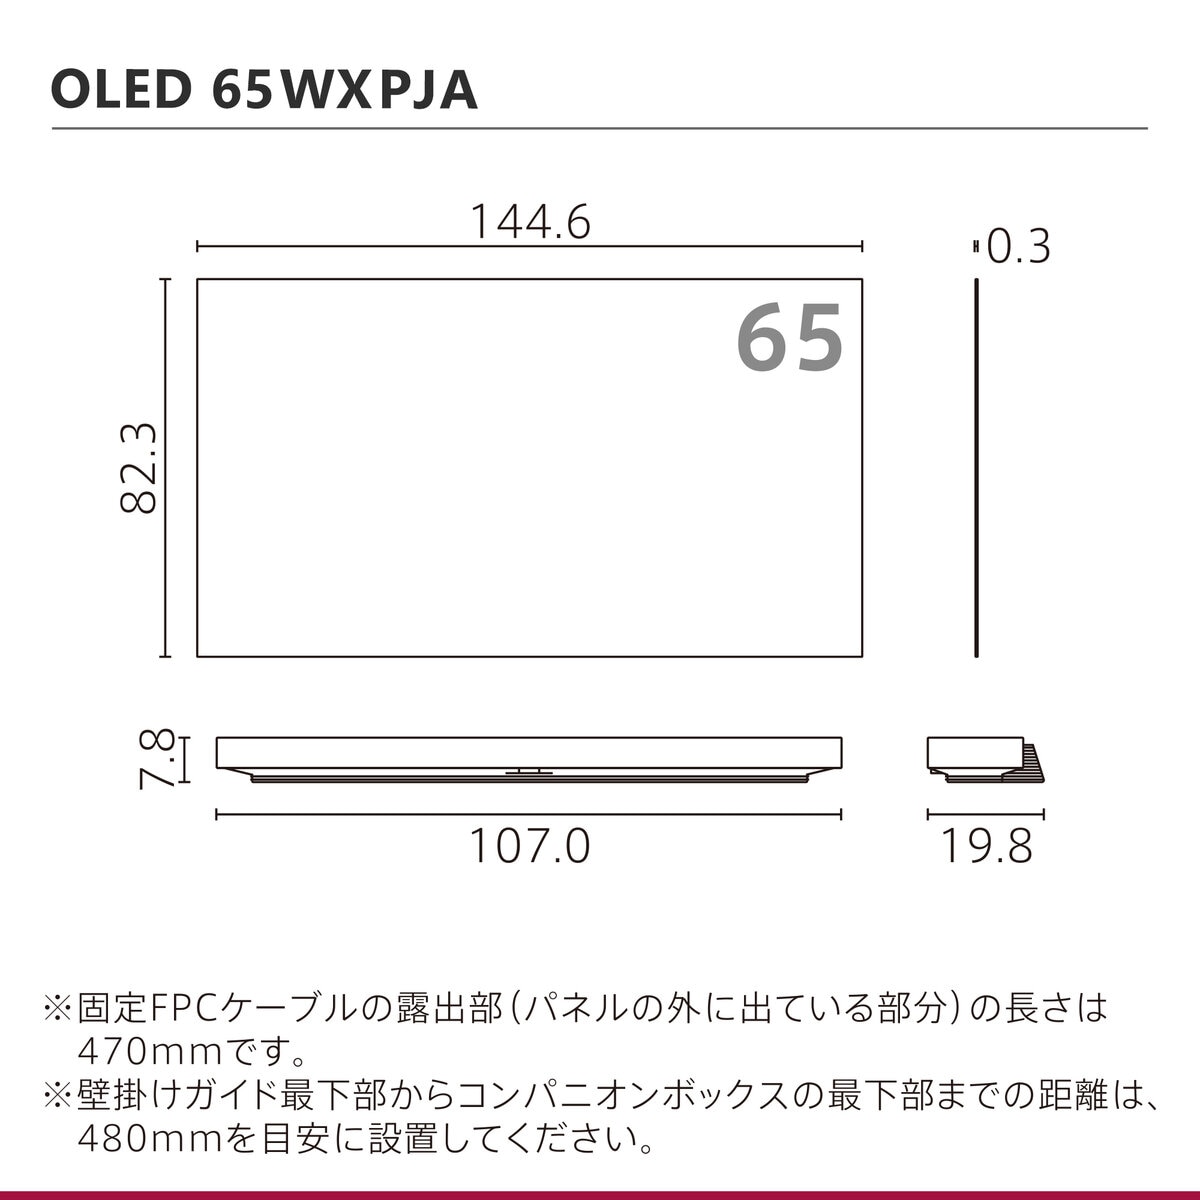 LG 65型 4K有機ELテレビ 65WXPJA Costco Japan